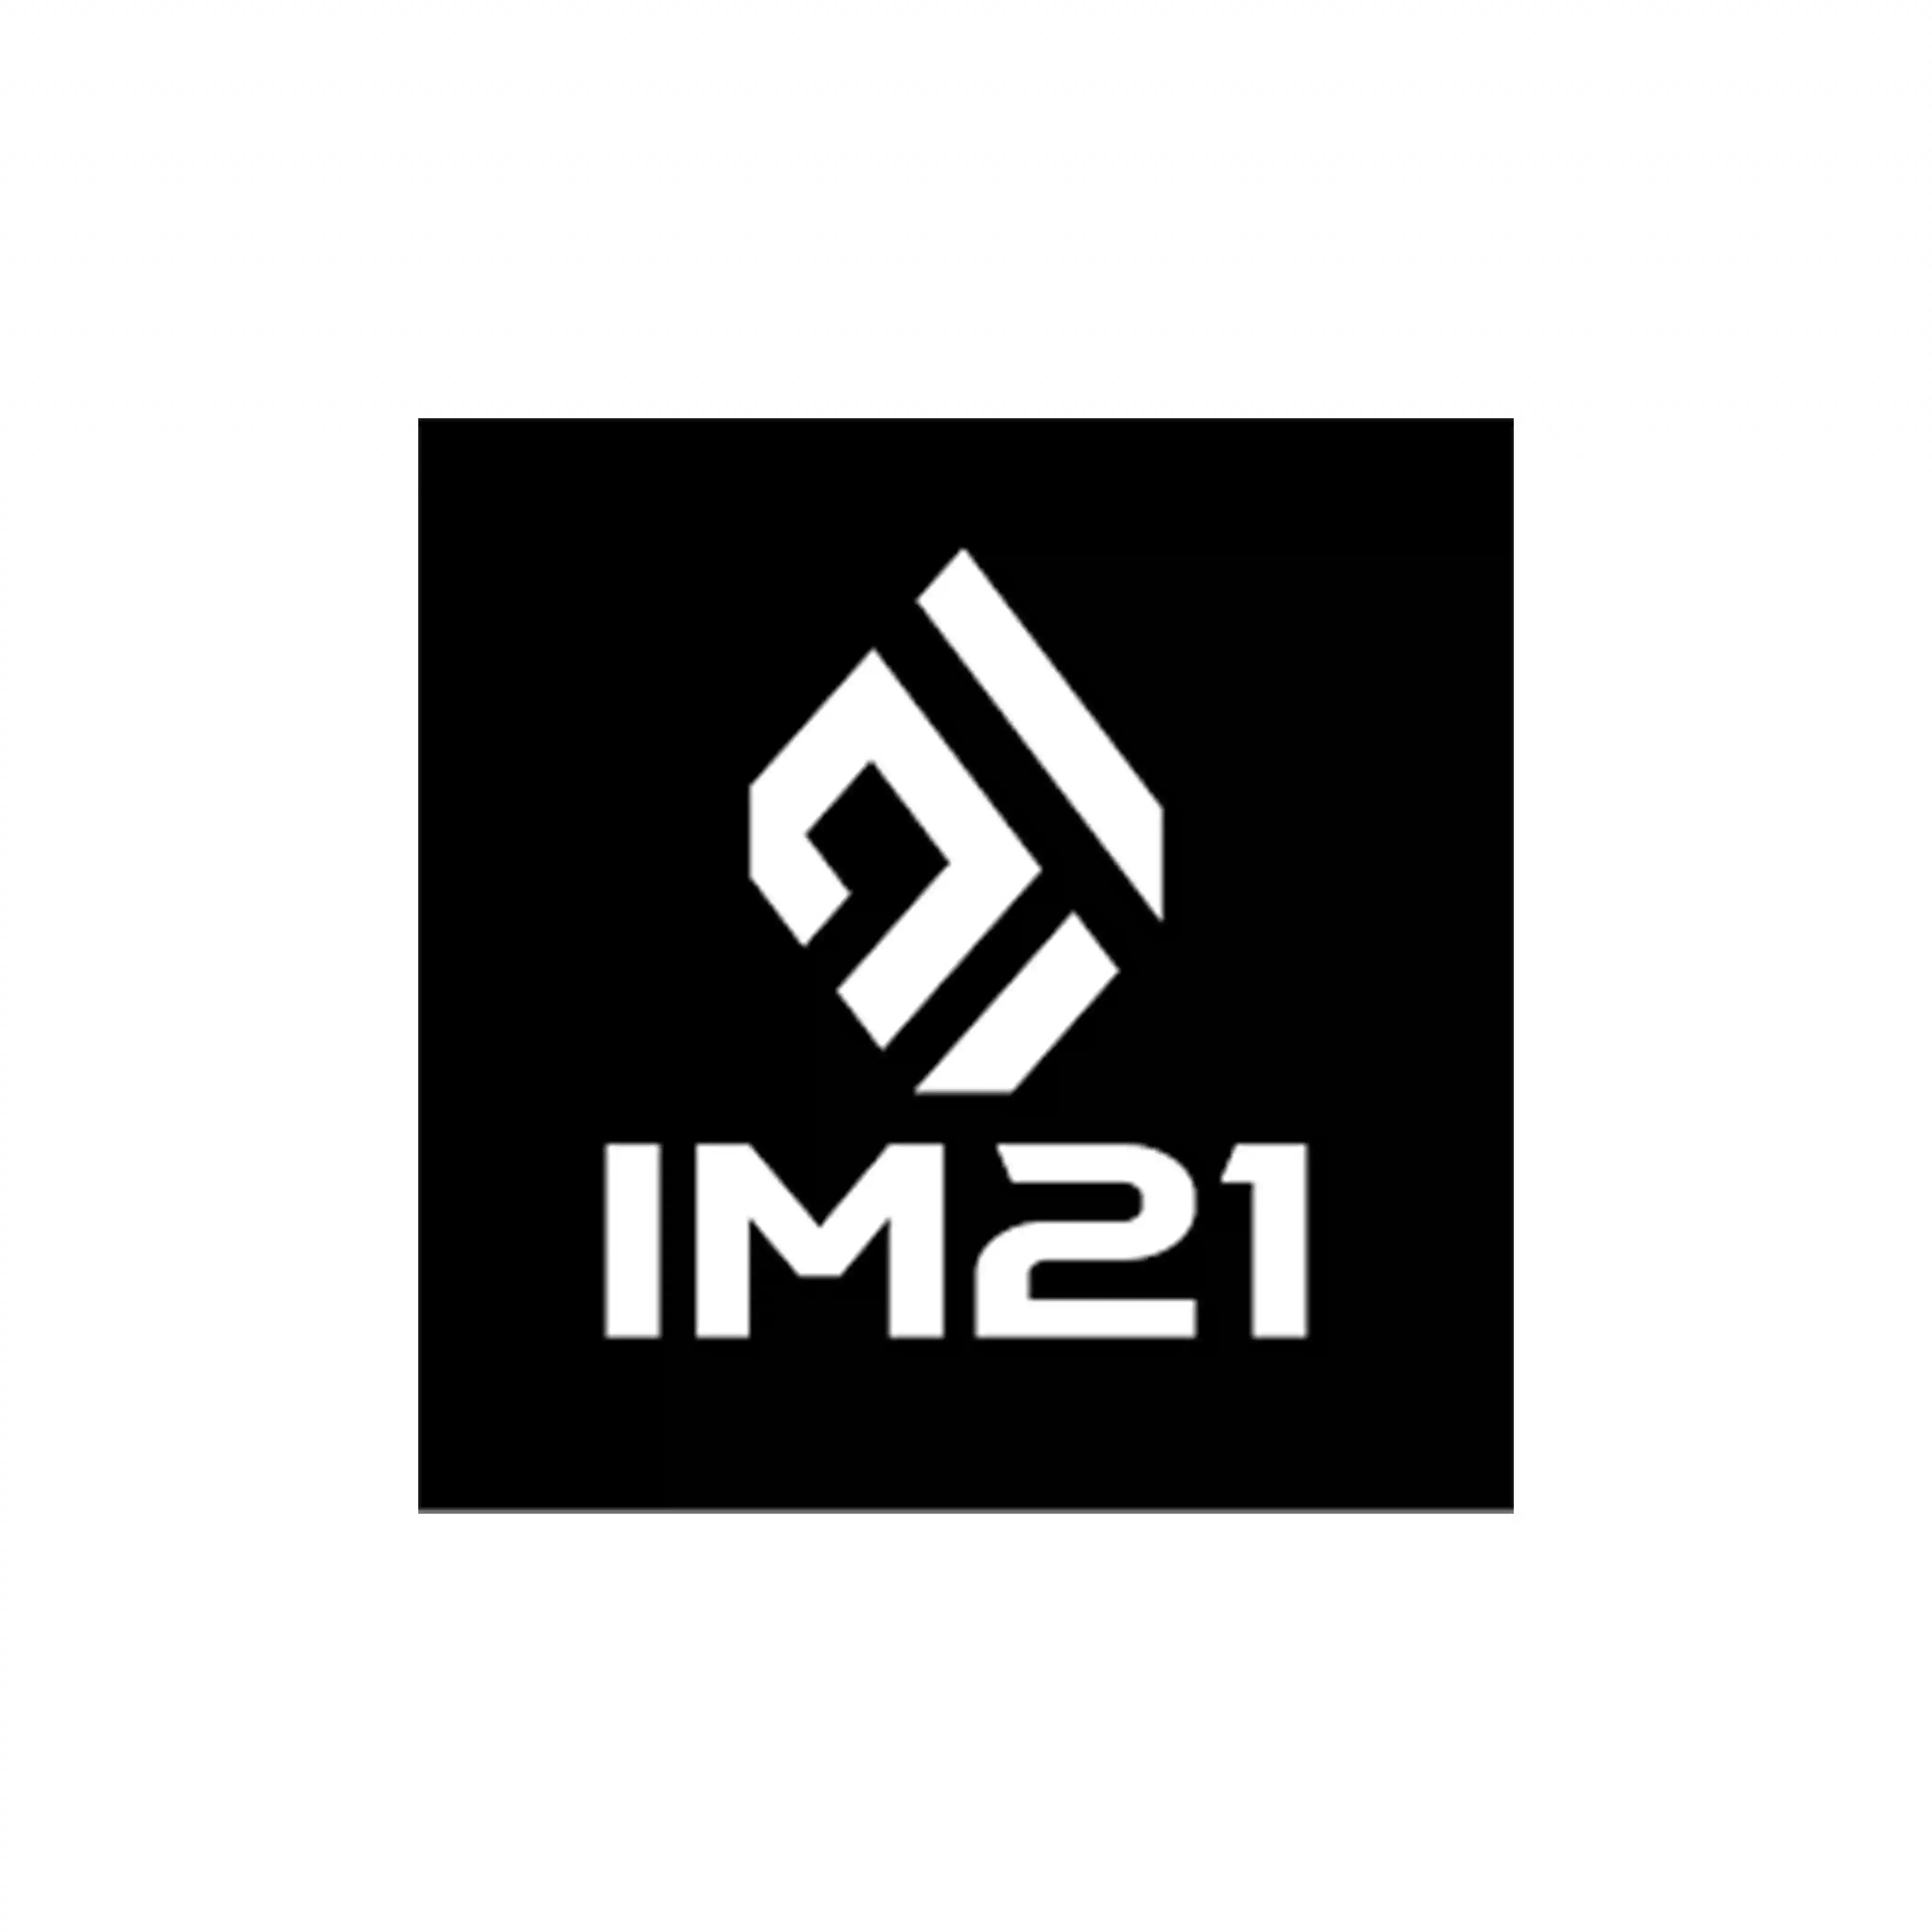 Im-21 logo